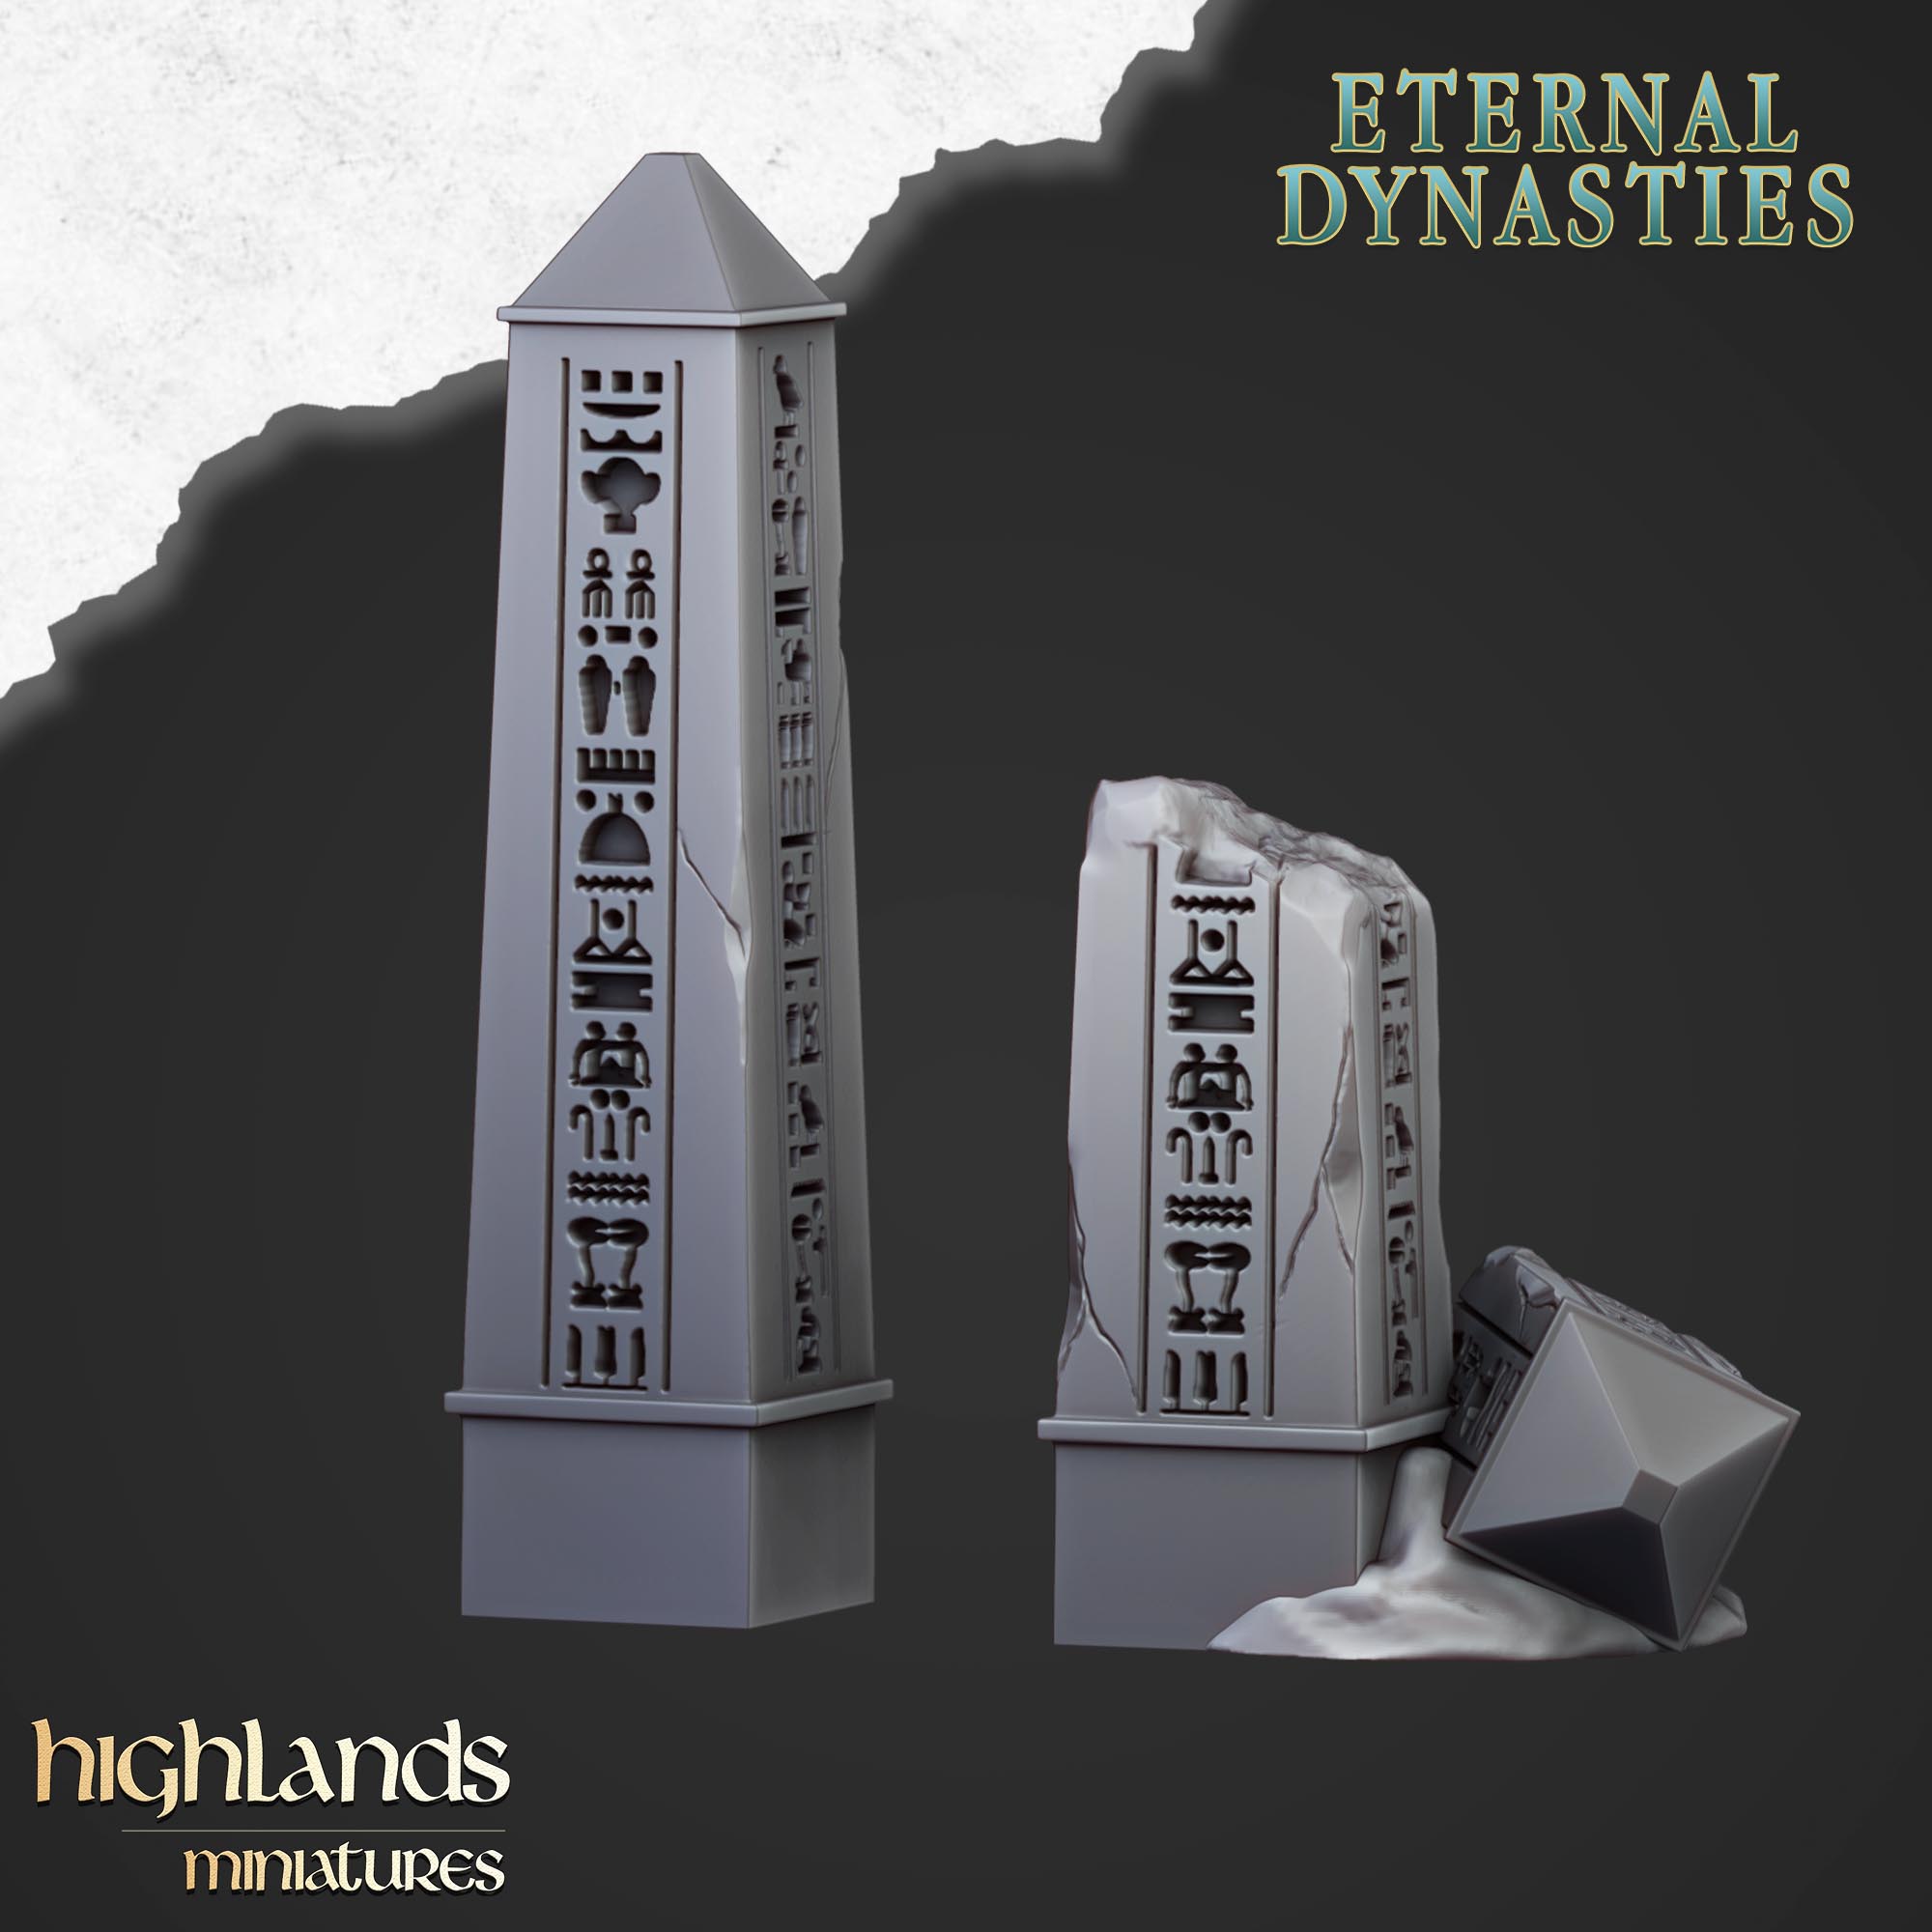 Antikes Obelisk-Gelände (x2) – Ewige Dynastien | Highlands Miniatures